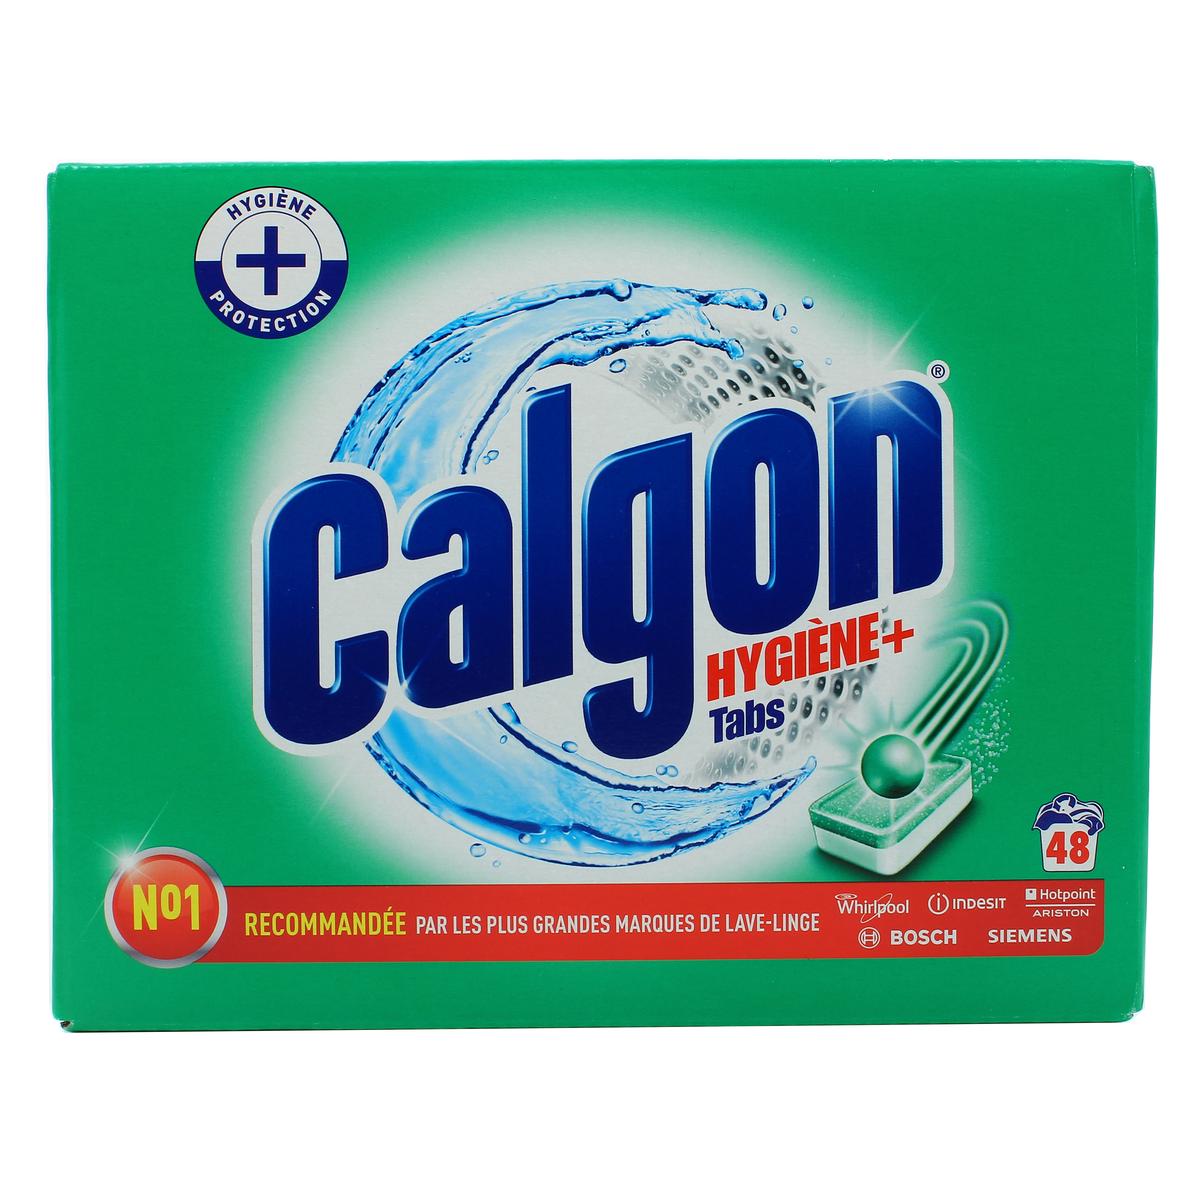 Achat Calgon Anti-calcaire Hygiène plus pour lave linge, 48 tablettes